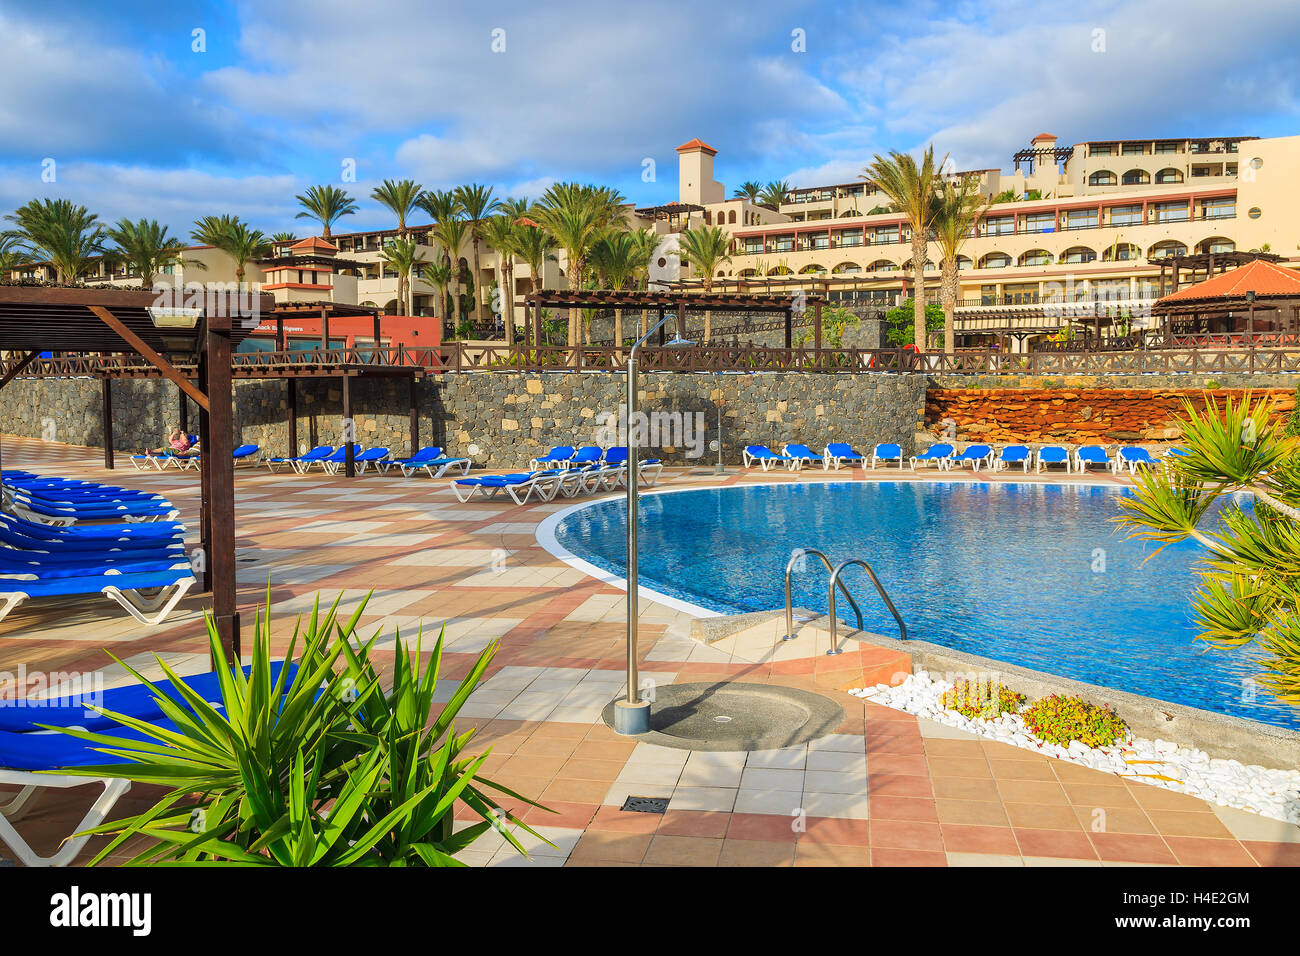 MORRO JABLE, FUERTEVENTURA - 6. Februar 2014: Schwimmbad von einem Luxus-Hotel Barcelo Jandia Mar in Stadt von Morro Jable. Dies ist ein beliebtes Urlaubsziel für Touristen auf der Insel Fuerteventura. Stockfoto